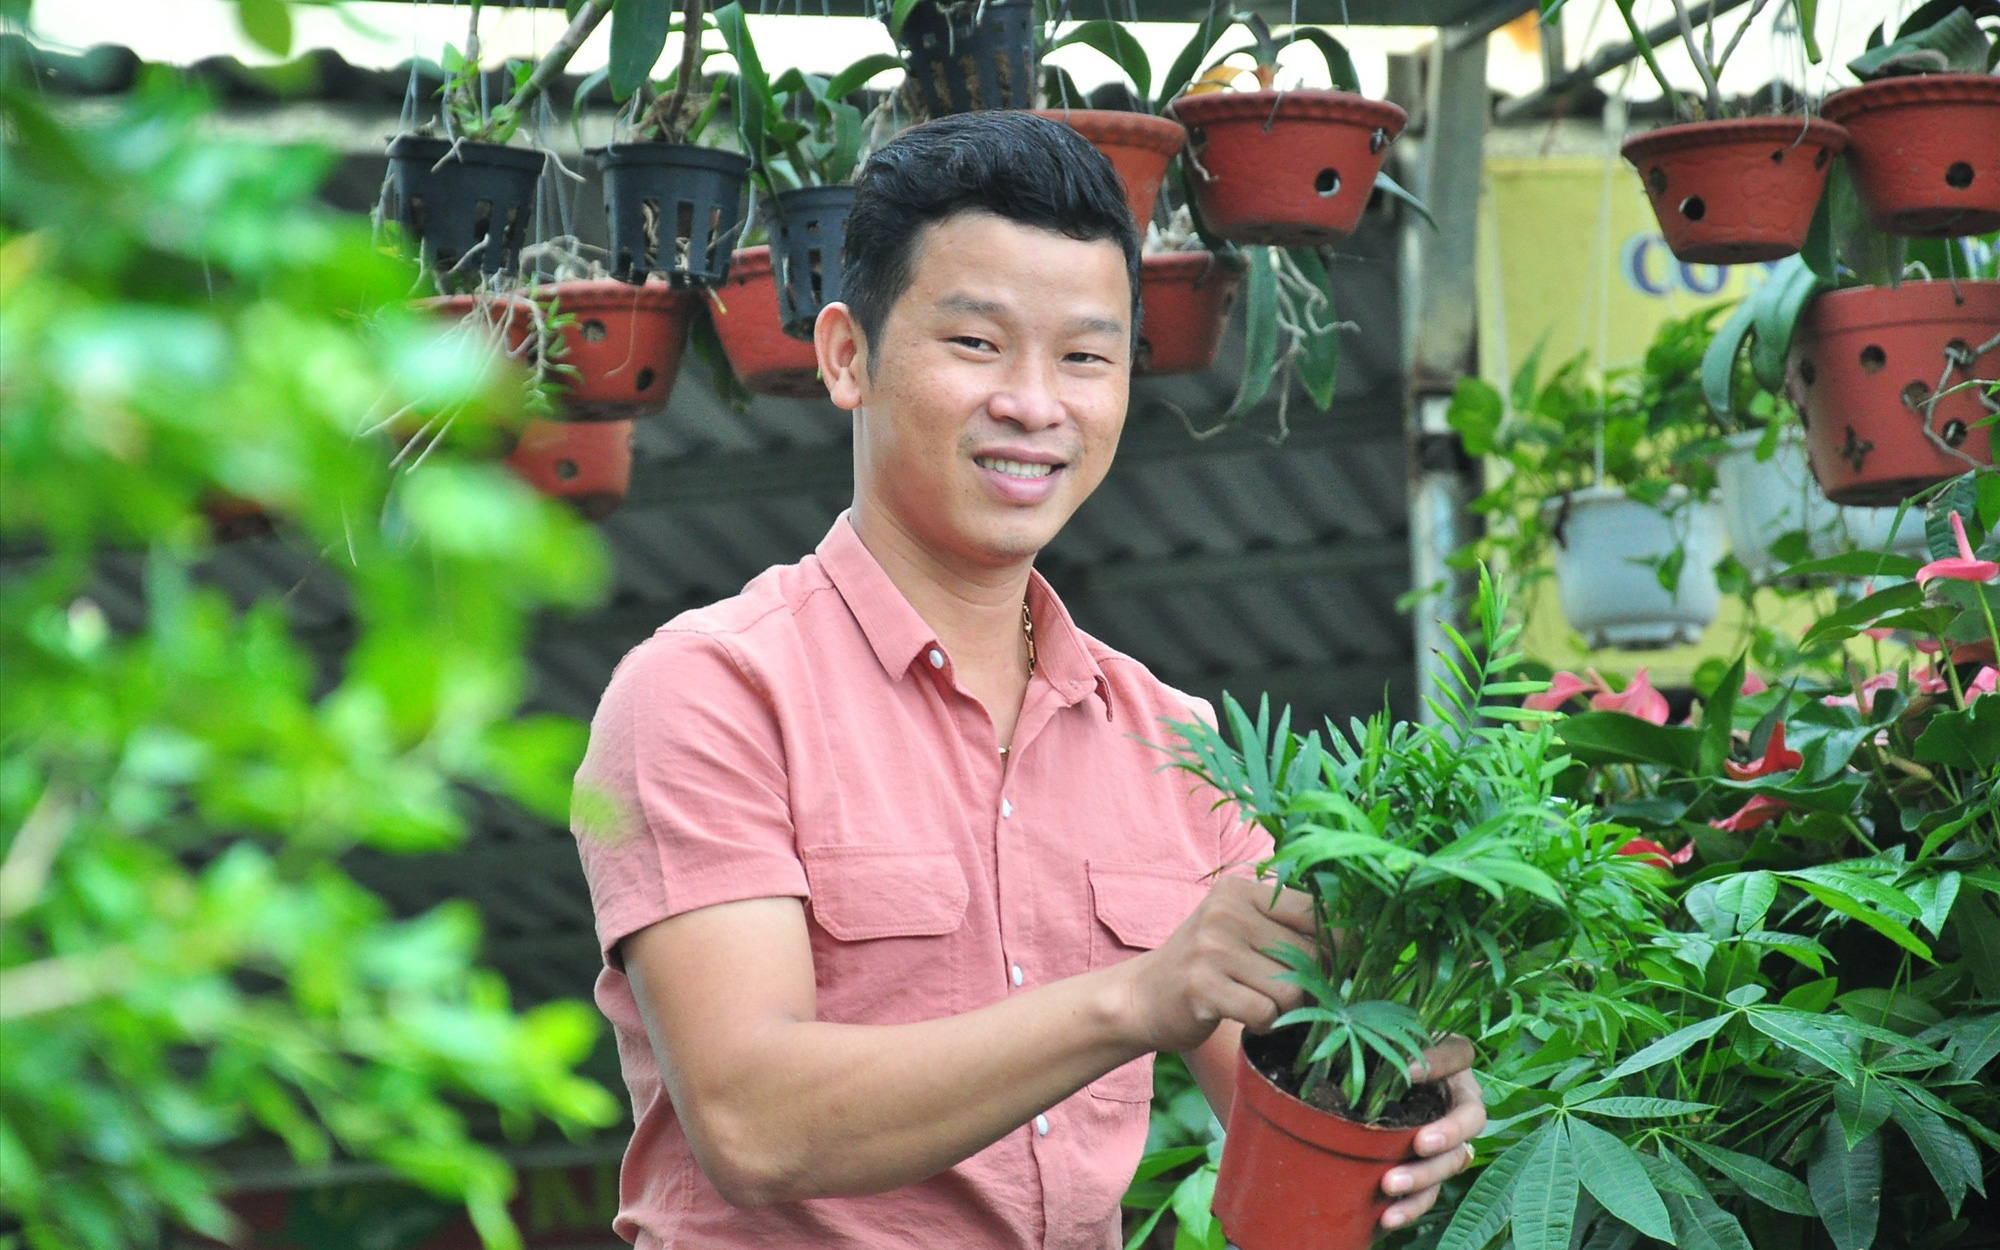 Quảng Nam: Thôi làm nhà nước, trai làng 9X xoay sang trồng cây cảnh quan, năm 2021 doanh thu gần 10 tỷ, lãi bao nhiêu?